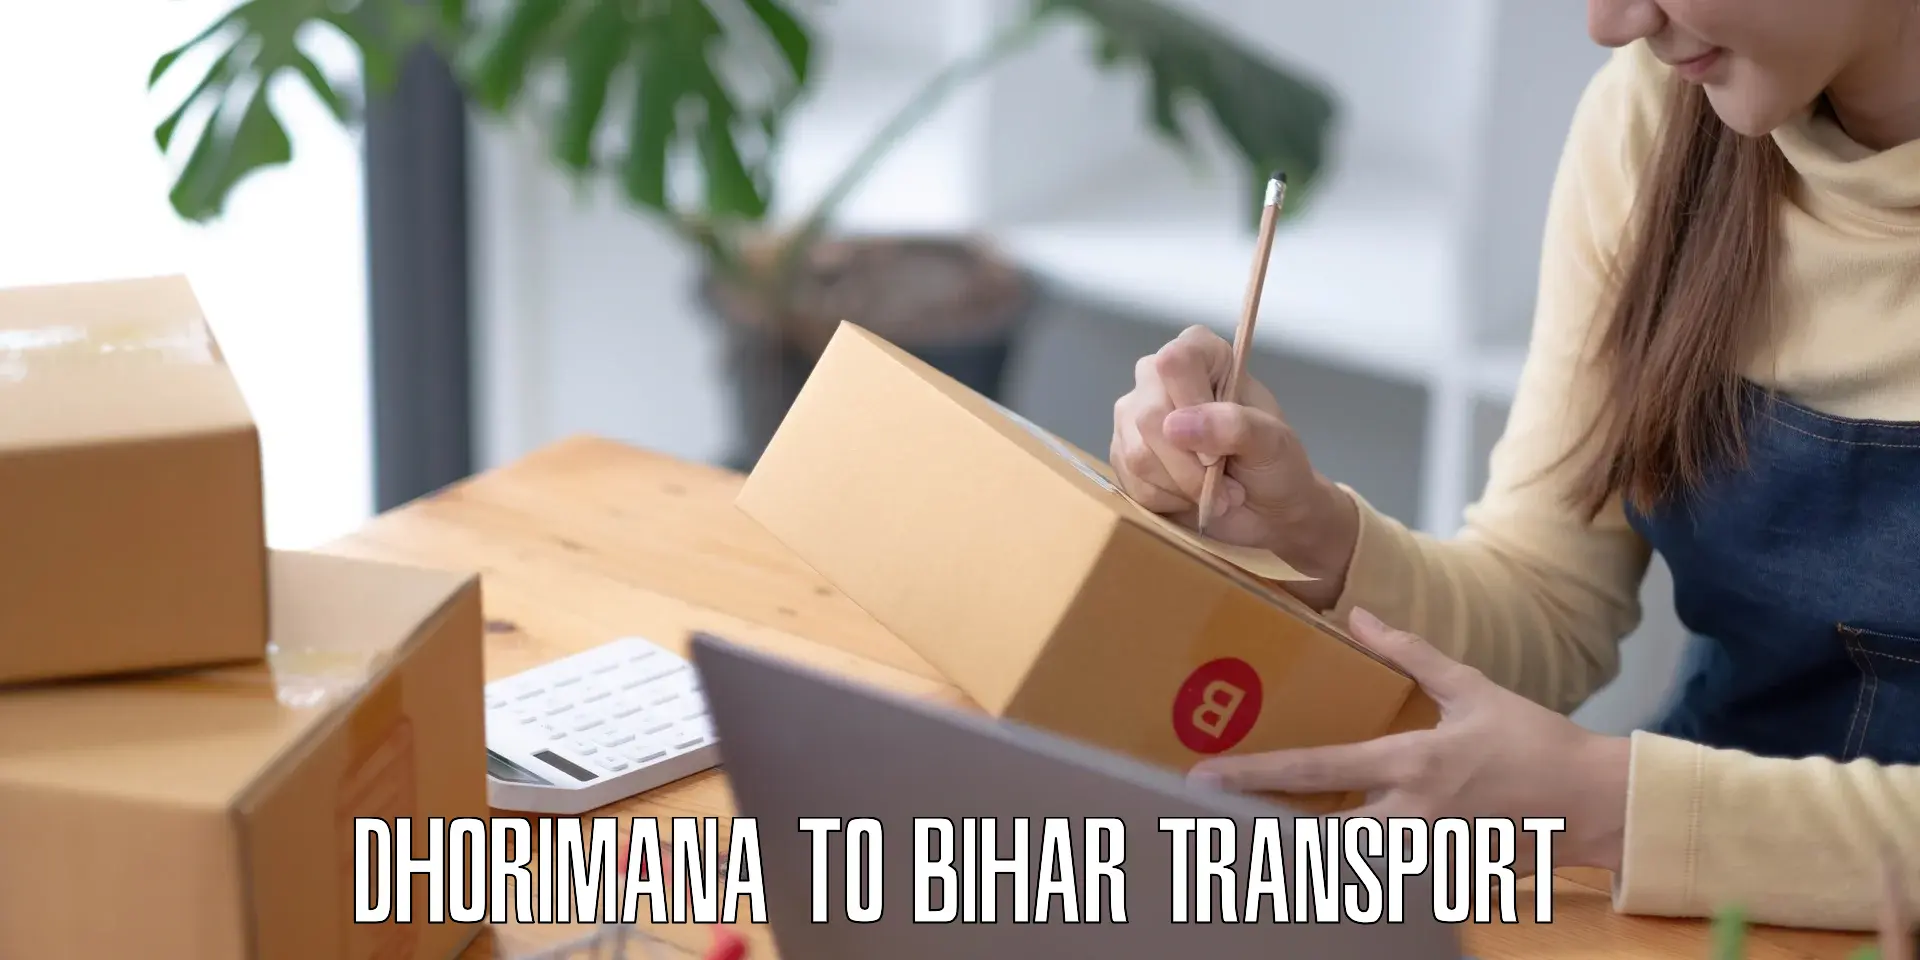 Transport in sharing Dhorimana to Jhajha